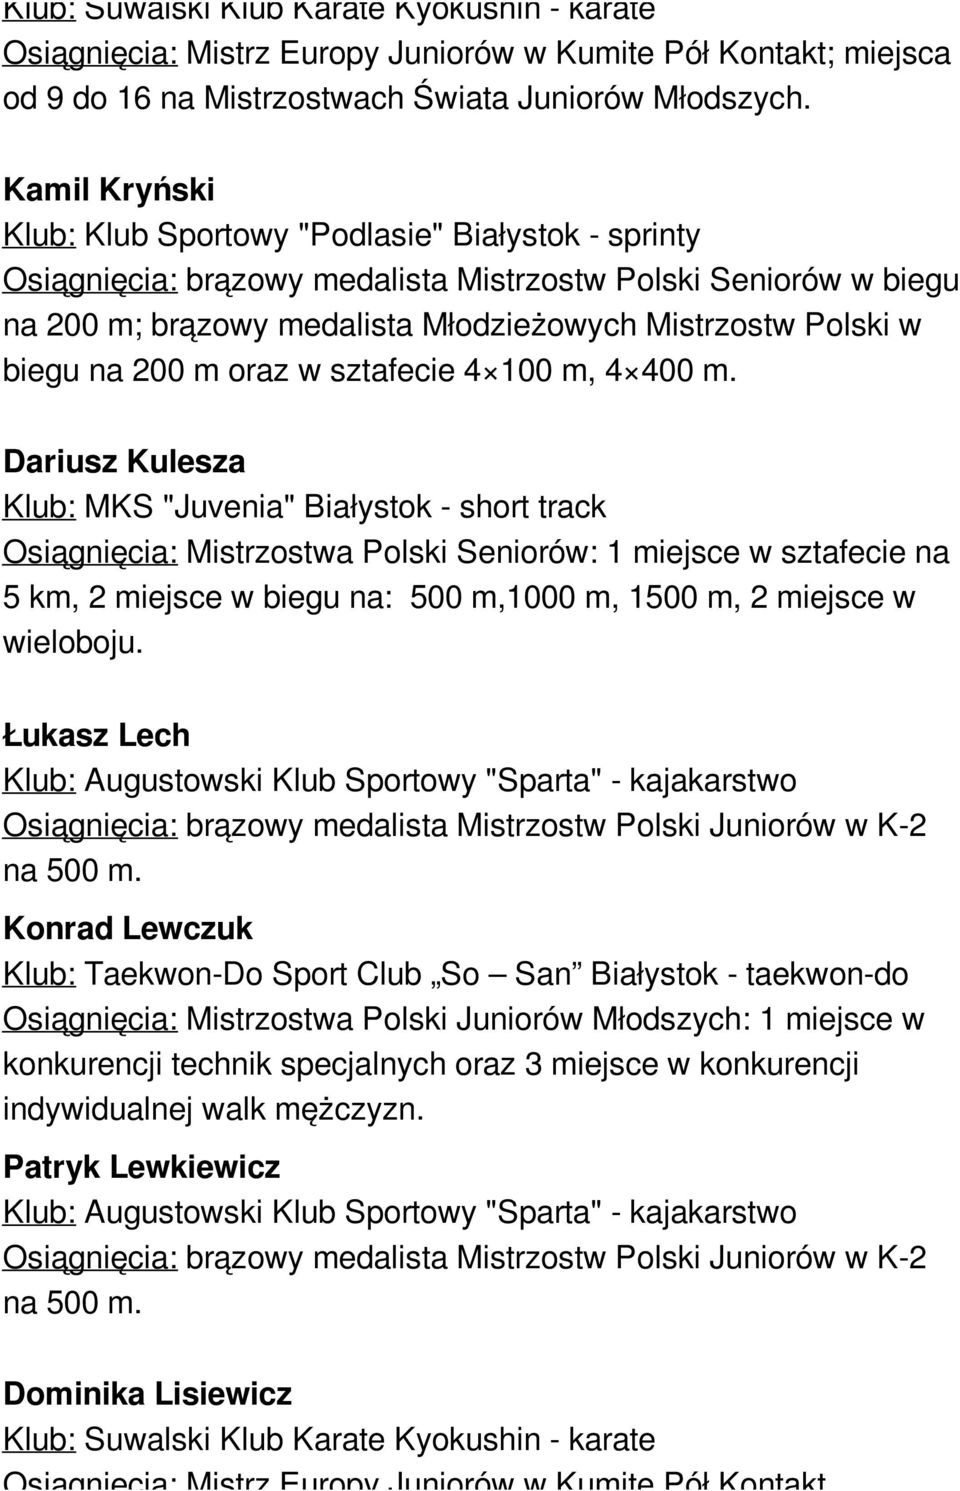 na 200 m oraz w sztafecie 4 100 m, 4 400 m. Dariusz Kulesza Osiągnięcia: Mistrzostwa Polski Seniorów: 1 miejsce w sztafecie na 5 km, 2 miejsce w biegu na: 500 m,1000 m, 1500 m, 2 miejsce w wieloboju.